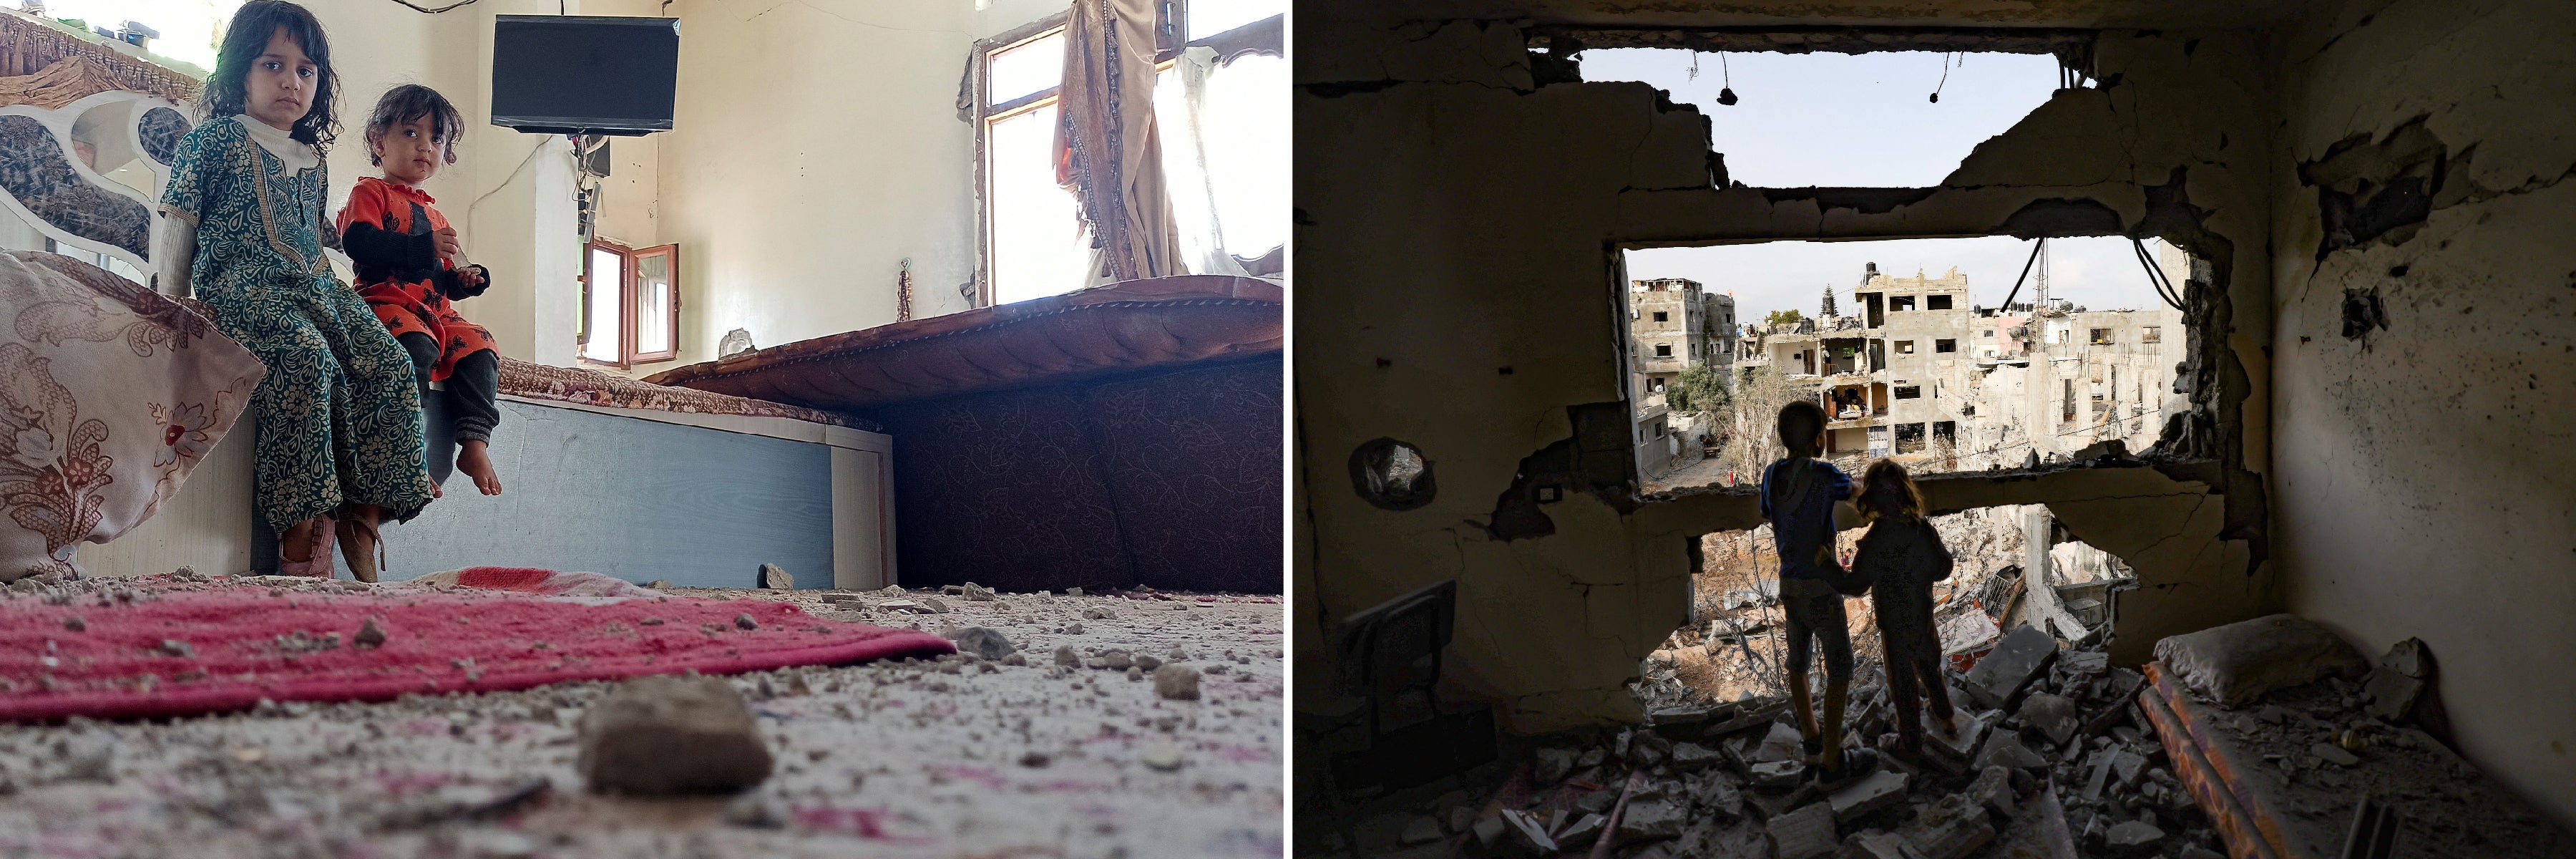 À gauche : Deux fillettes yéménites dans la chambre de leur domicile à Sanaa, qui a été endommagé par des frappes aériennes menées par des forces sous commandement saoudien et qui visaient un site militaire situé à proximité, le 19 janvier 2022. © 2022 Khaled Abdallah/Reuters. À droite : Deux enfants palestiniens photographiés parmi les décombres de leur chambre, après une attaque israélienne ayant gravement endommagé leur immeuble à Gaza, le 21 mai 2021. © 2021 Mohamed Abed/AFP/Getty Images